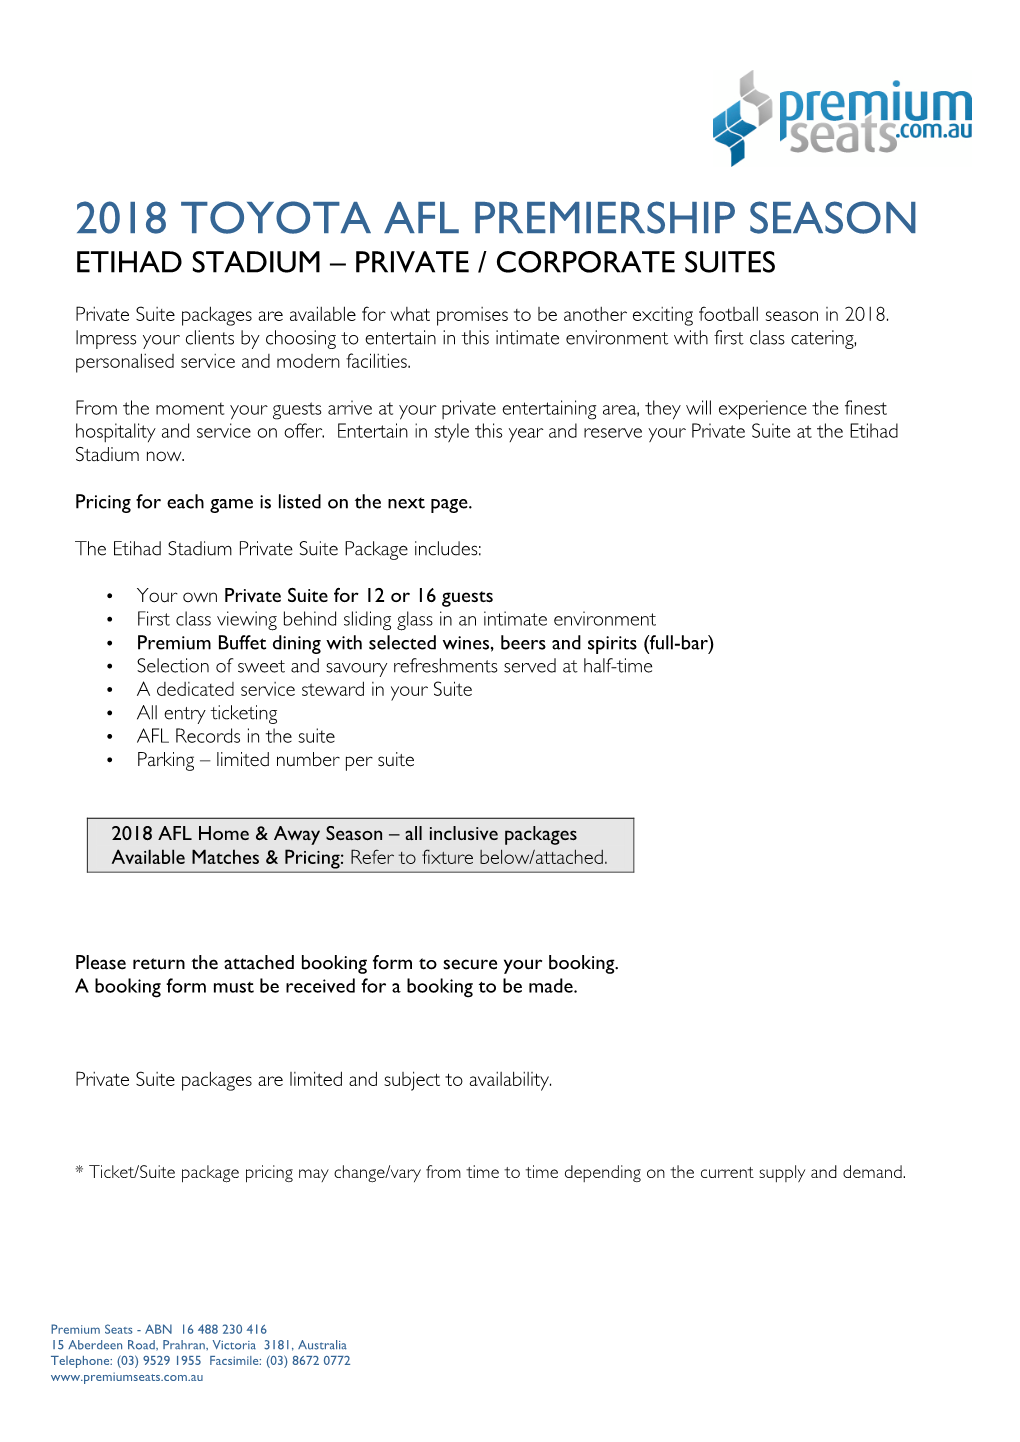 Etihad Stadium – Private / Corporate Suites